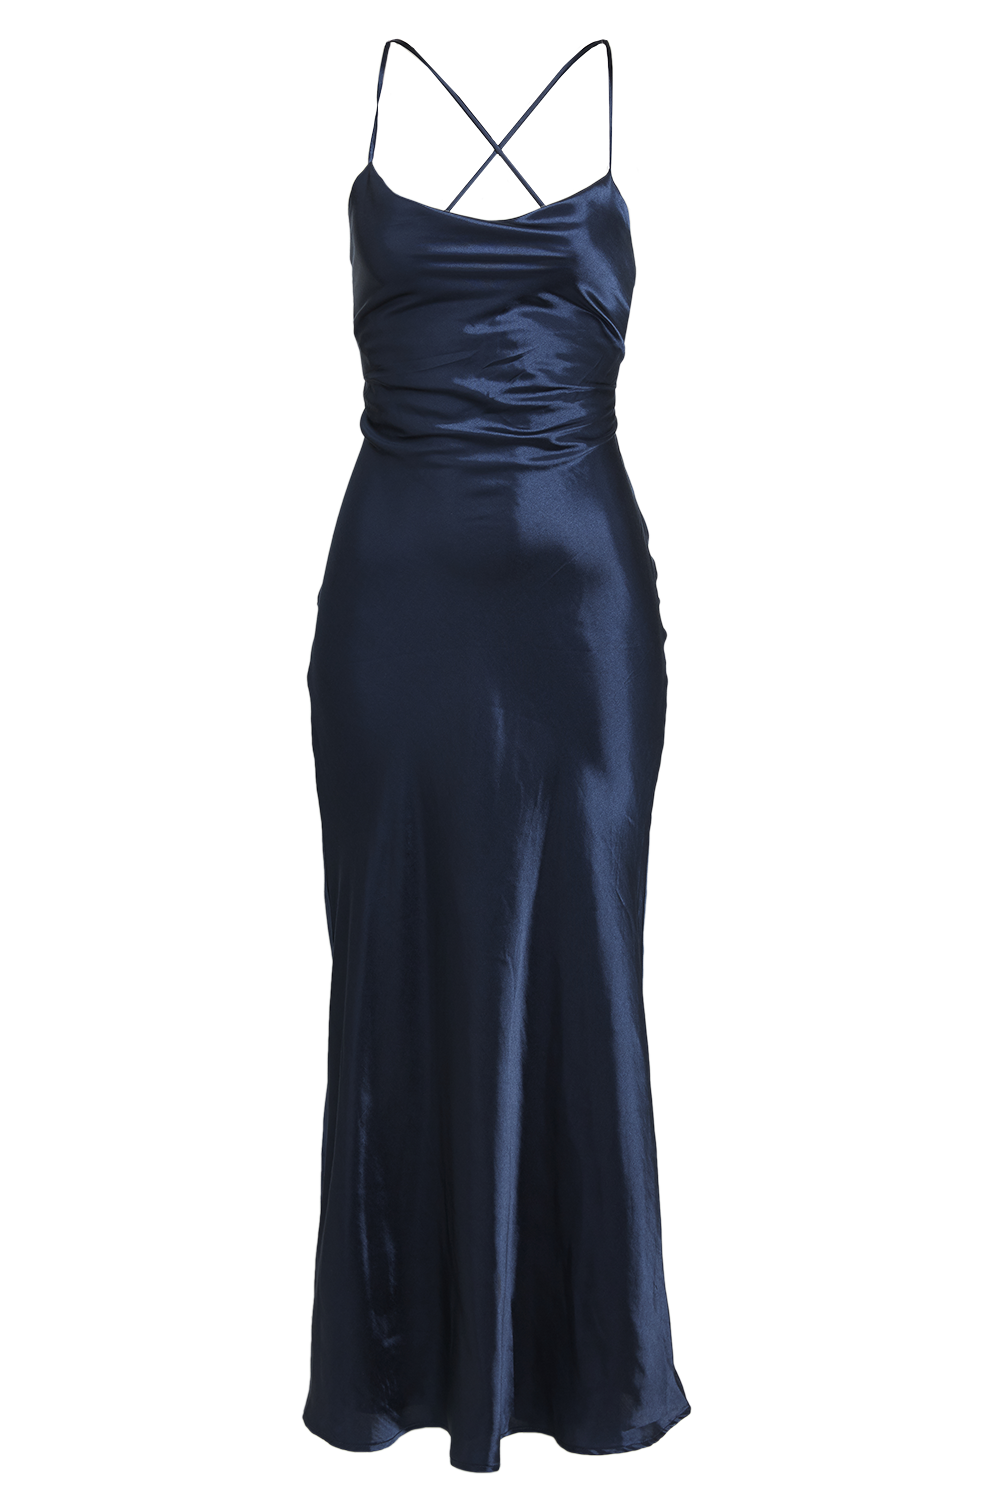 navy blue halter dress long